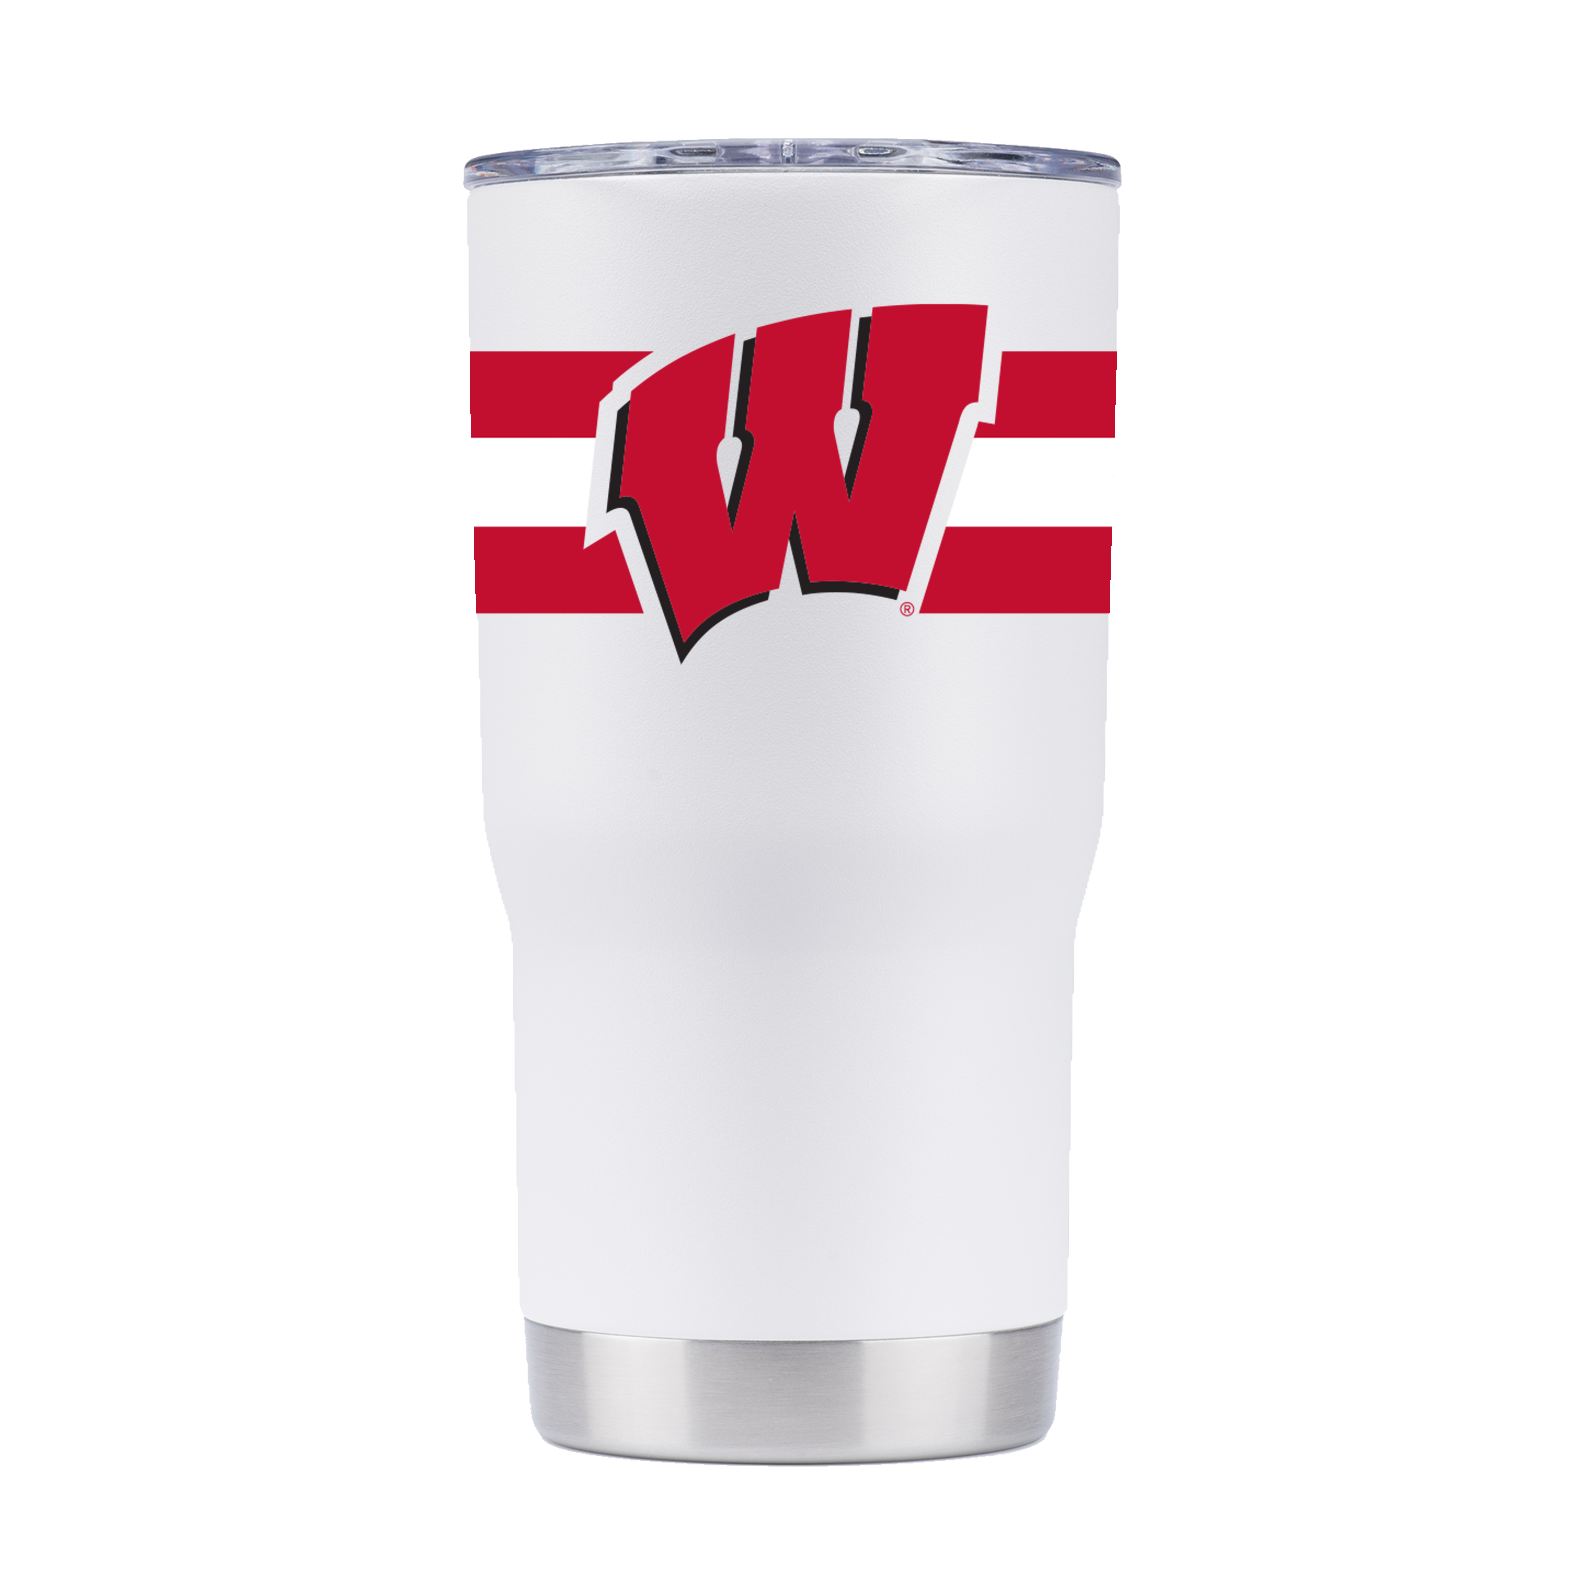 Wisconsin 20oz White Tumbler with Stripes